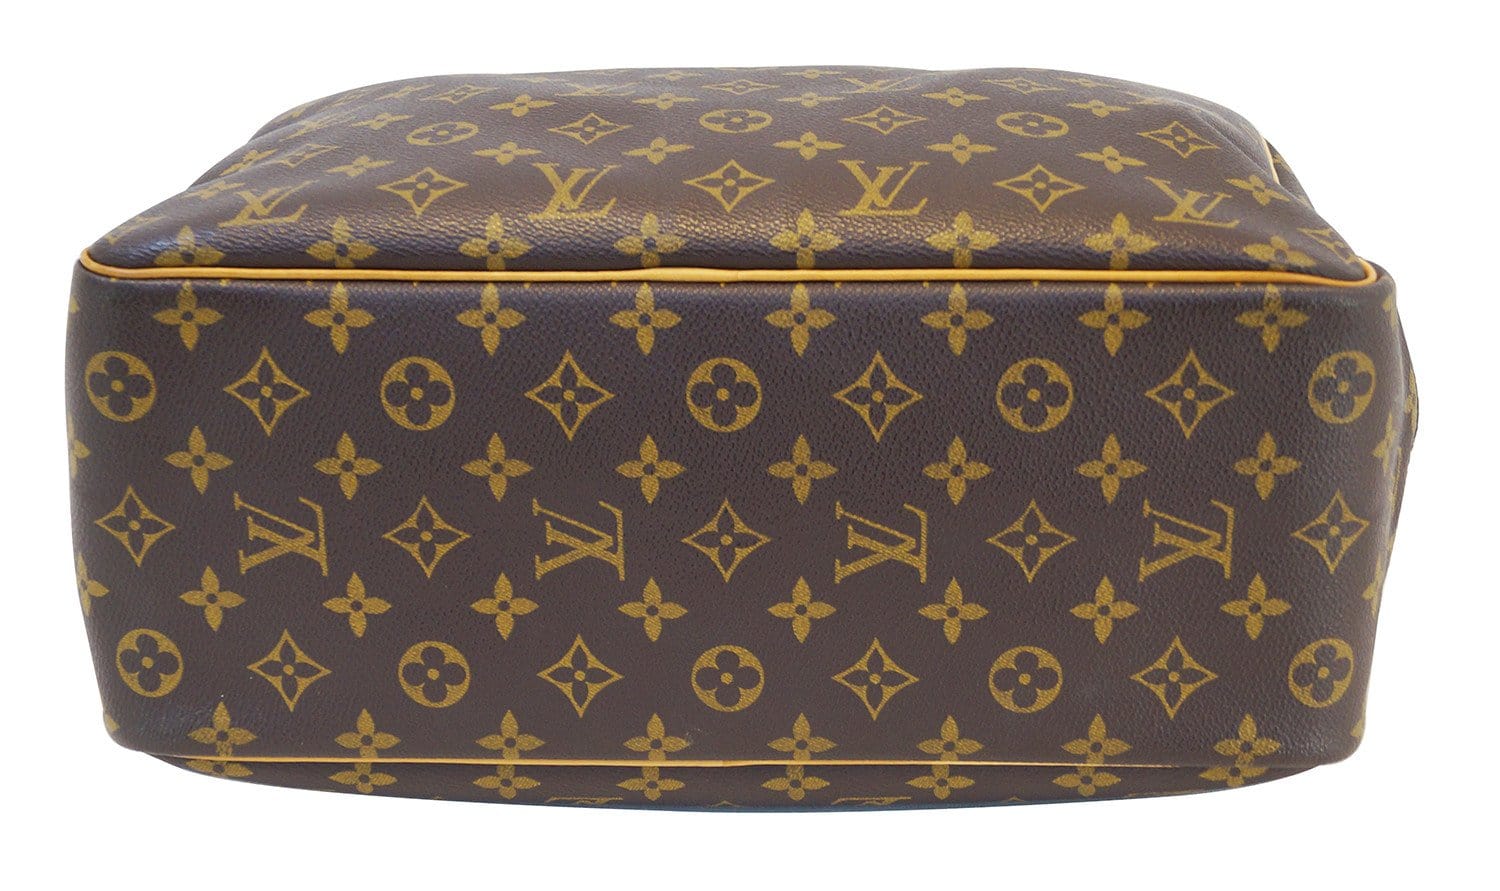 Authentic Louis Vuitton Monogram Deauville Bag